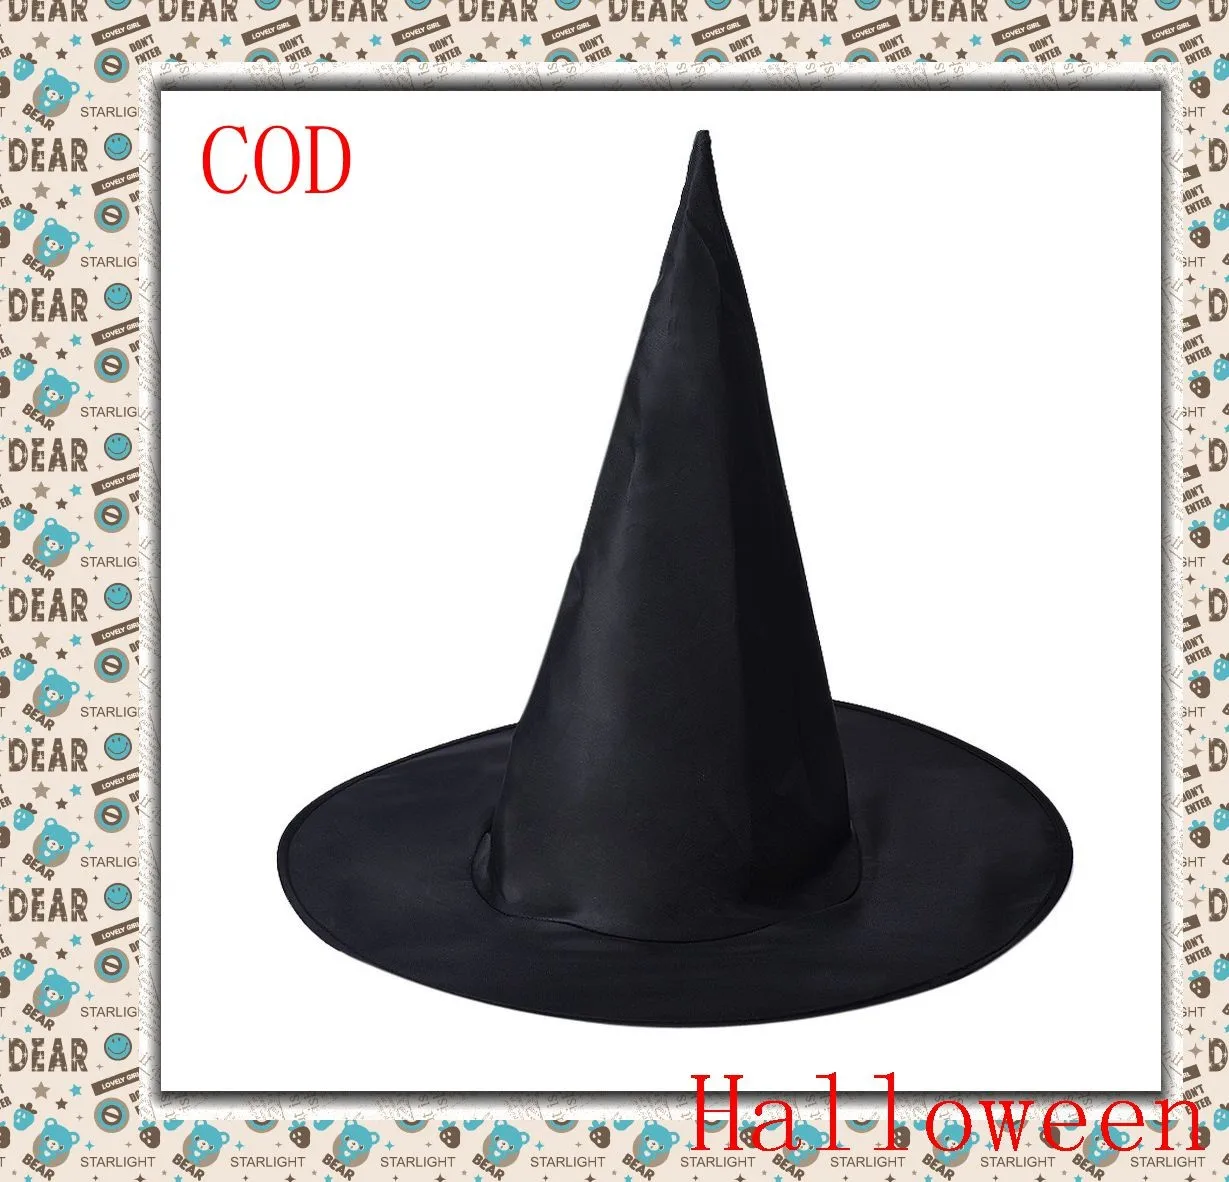 Женская черная шляпа ведьмы для взрослых 1 шт. аксессуар костюма Хэллоуина разных